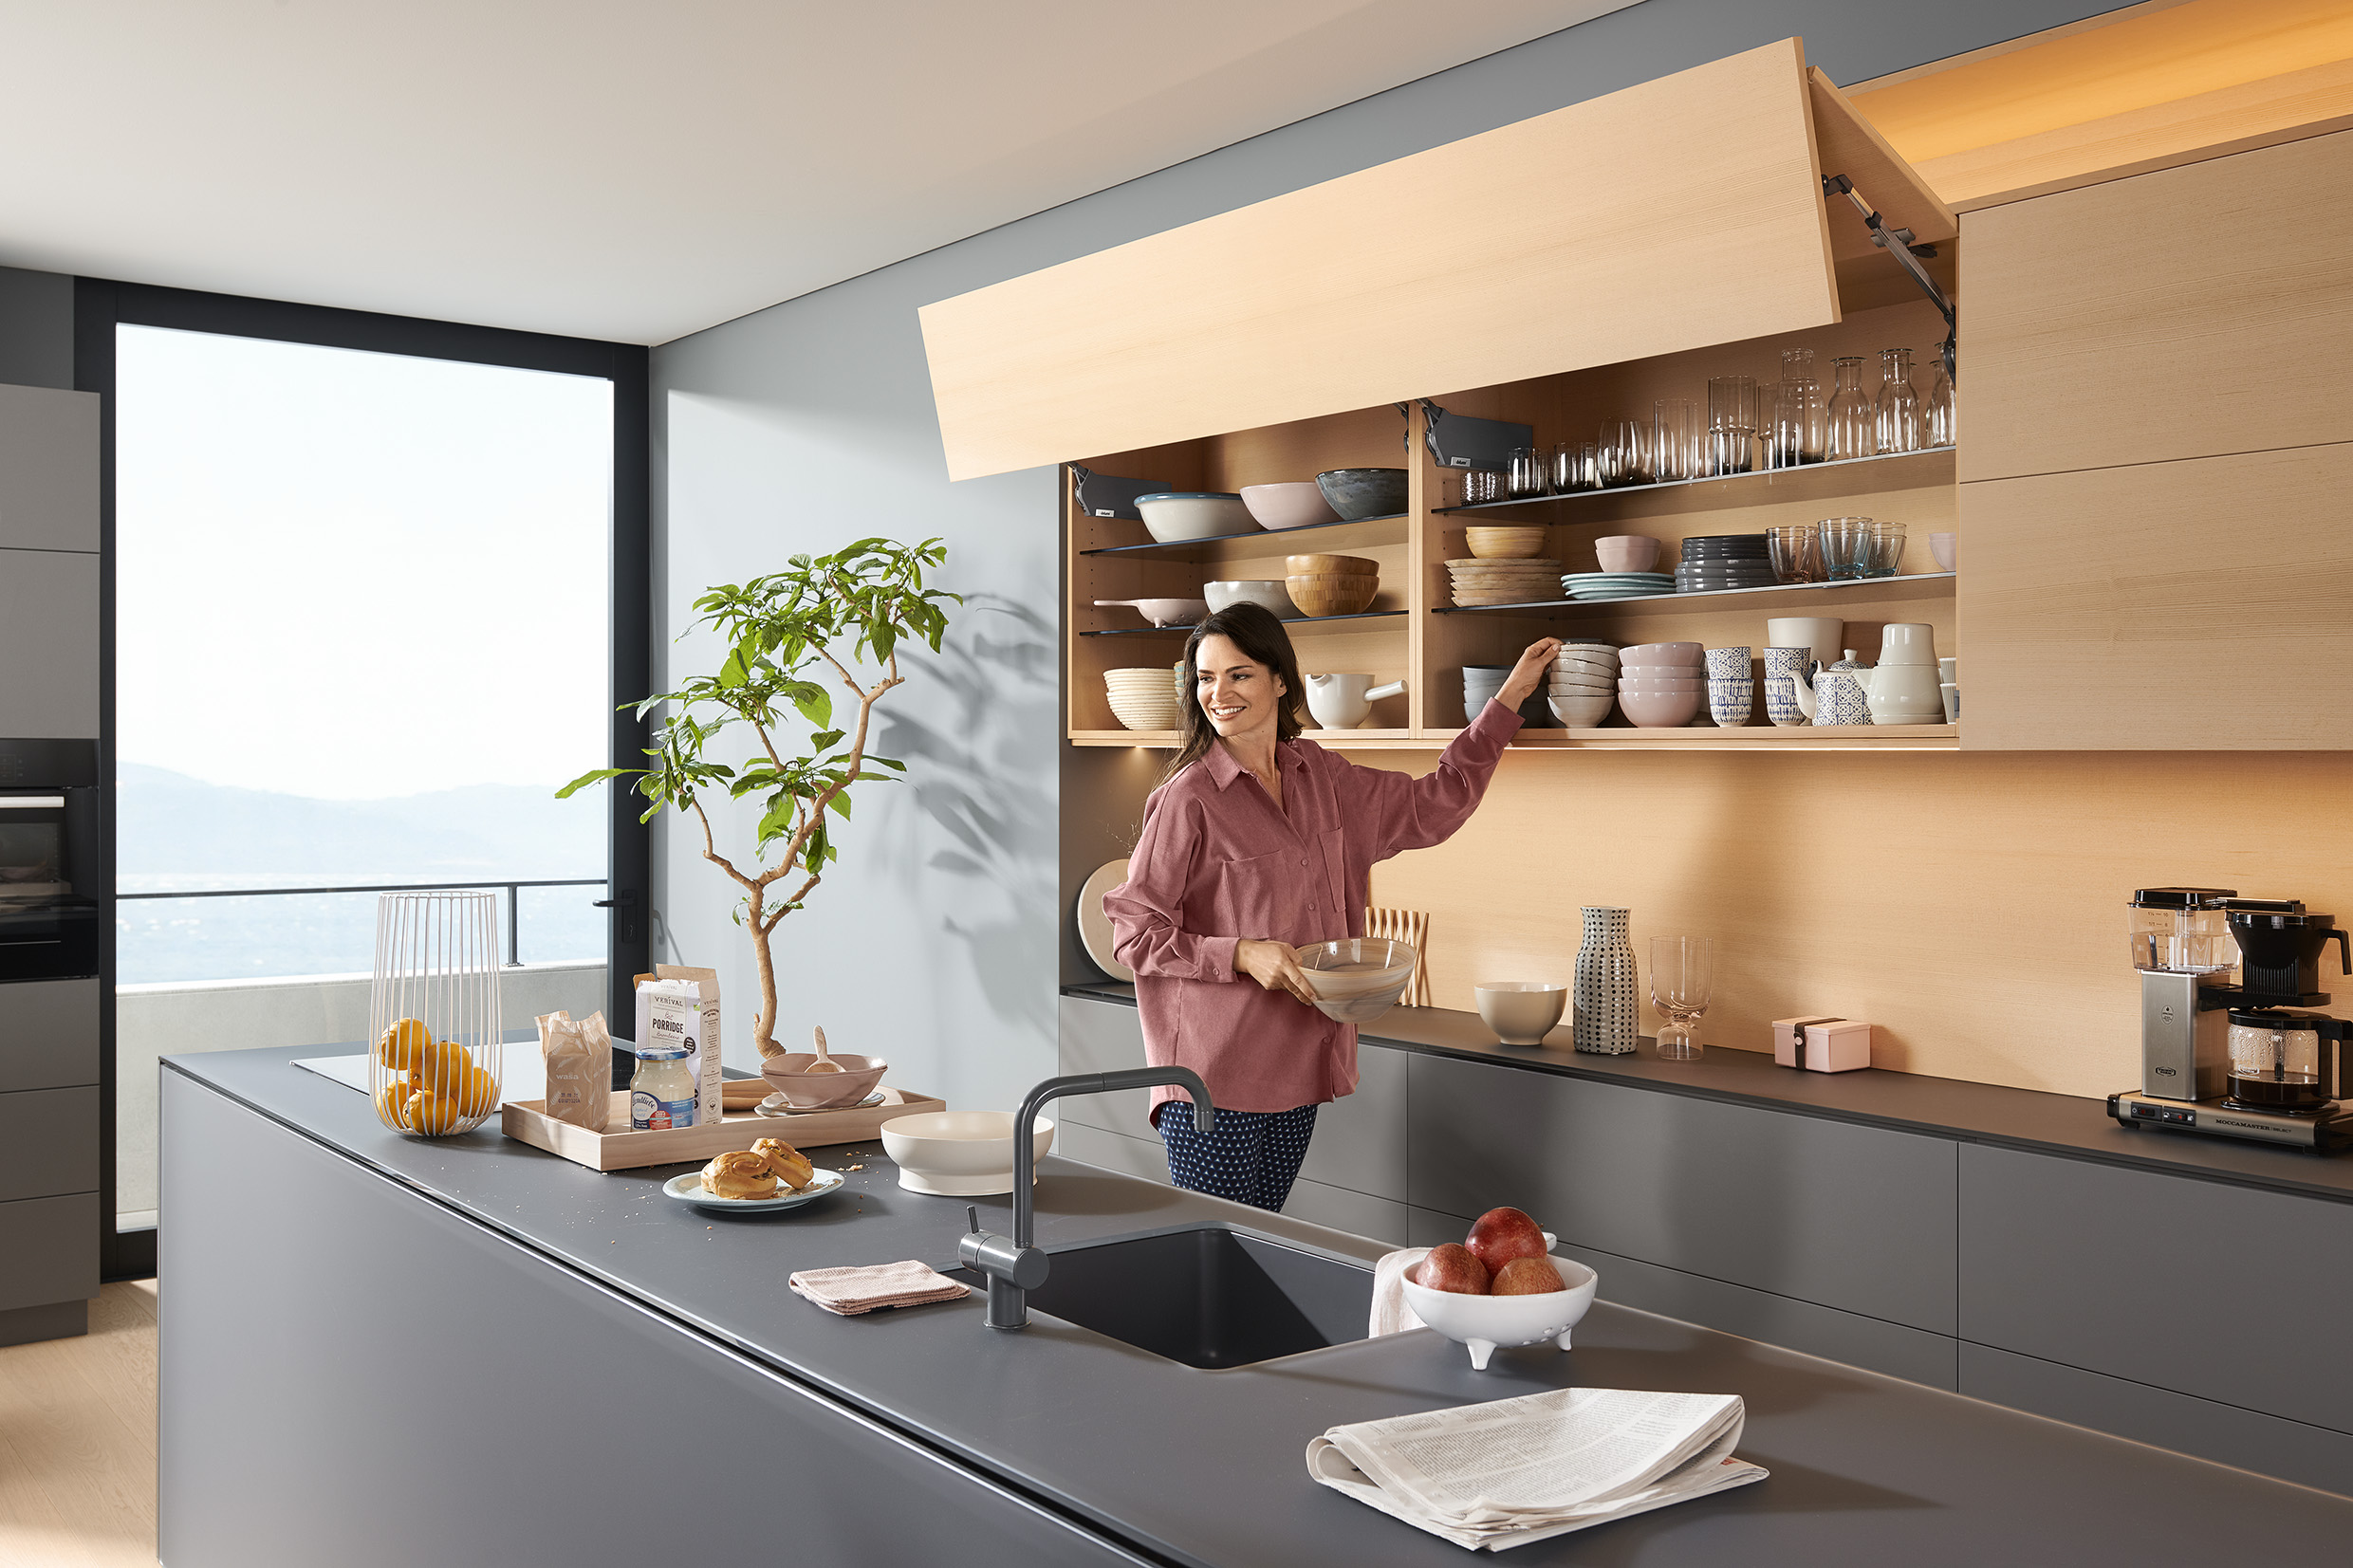 Žena v moderní kuchyni otevírá vrchní police